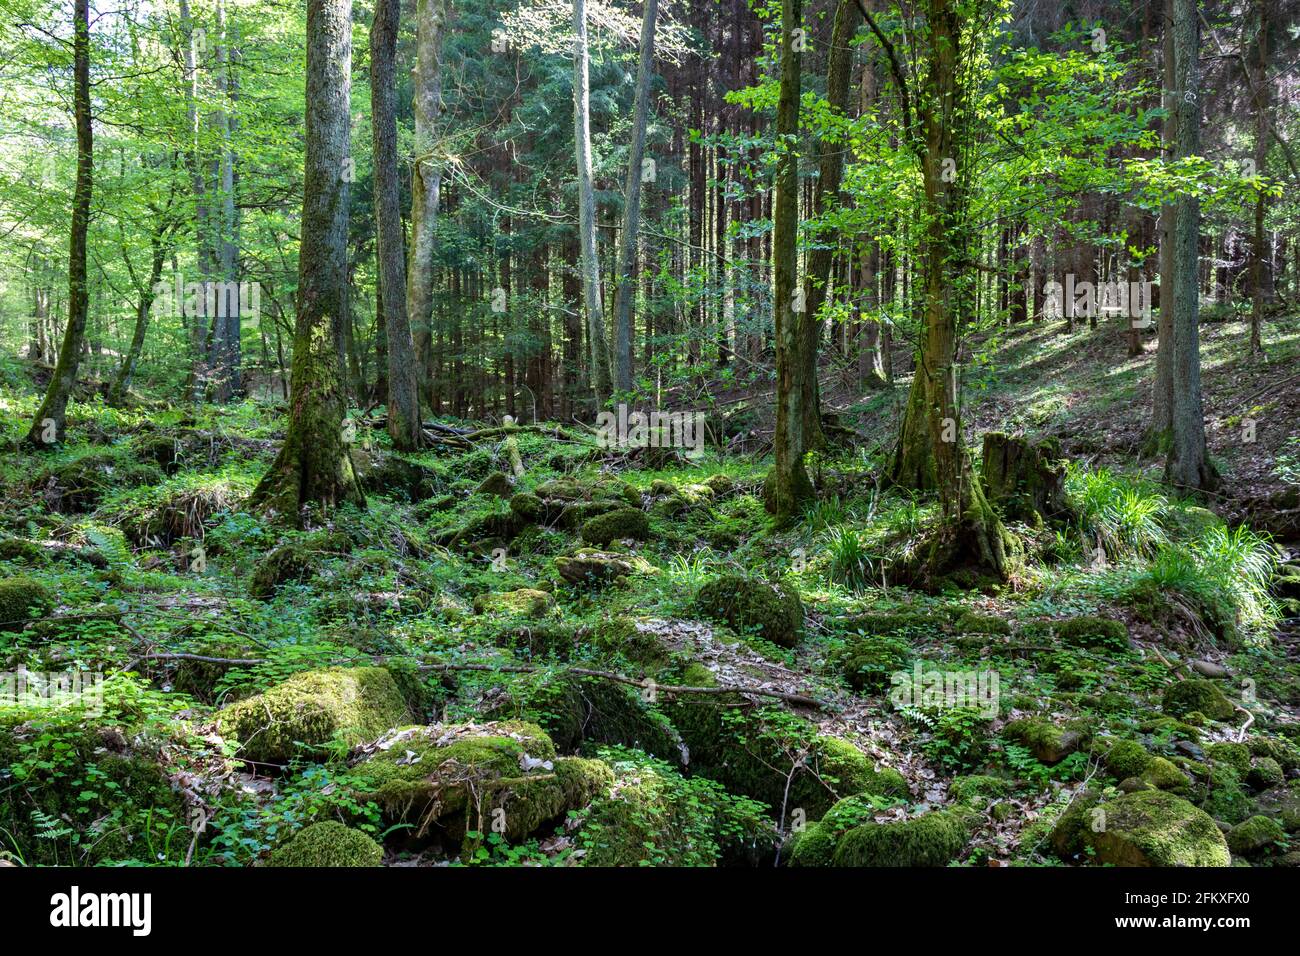 Percorso selvaggio nella foresta di Odenwald, Germania. Alberi verdi, rocce con muschio e luce solare nei boschi. Foto Stock